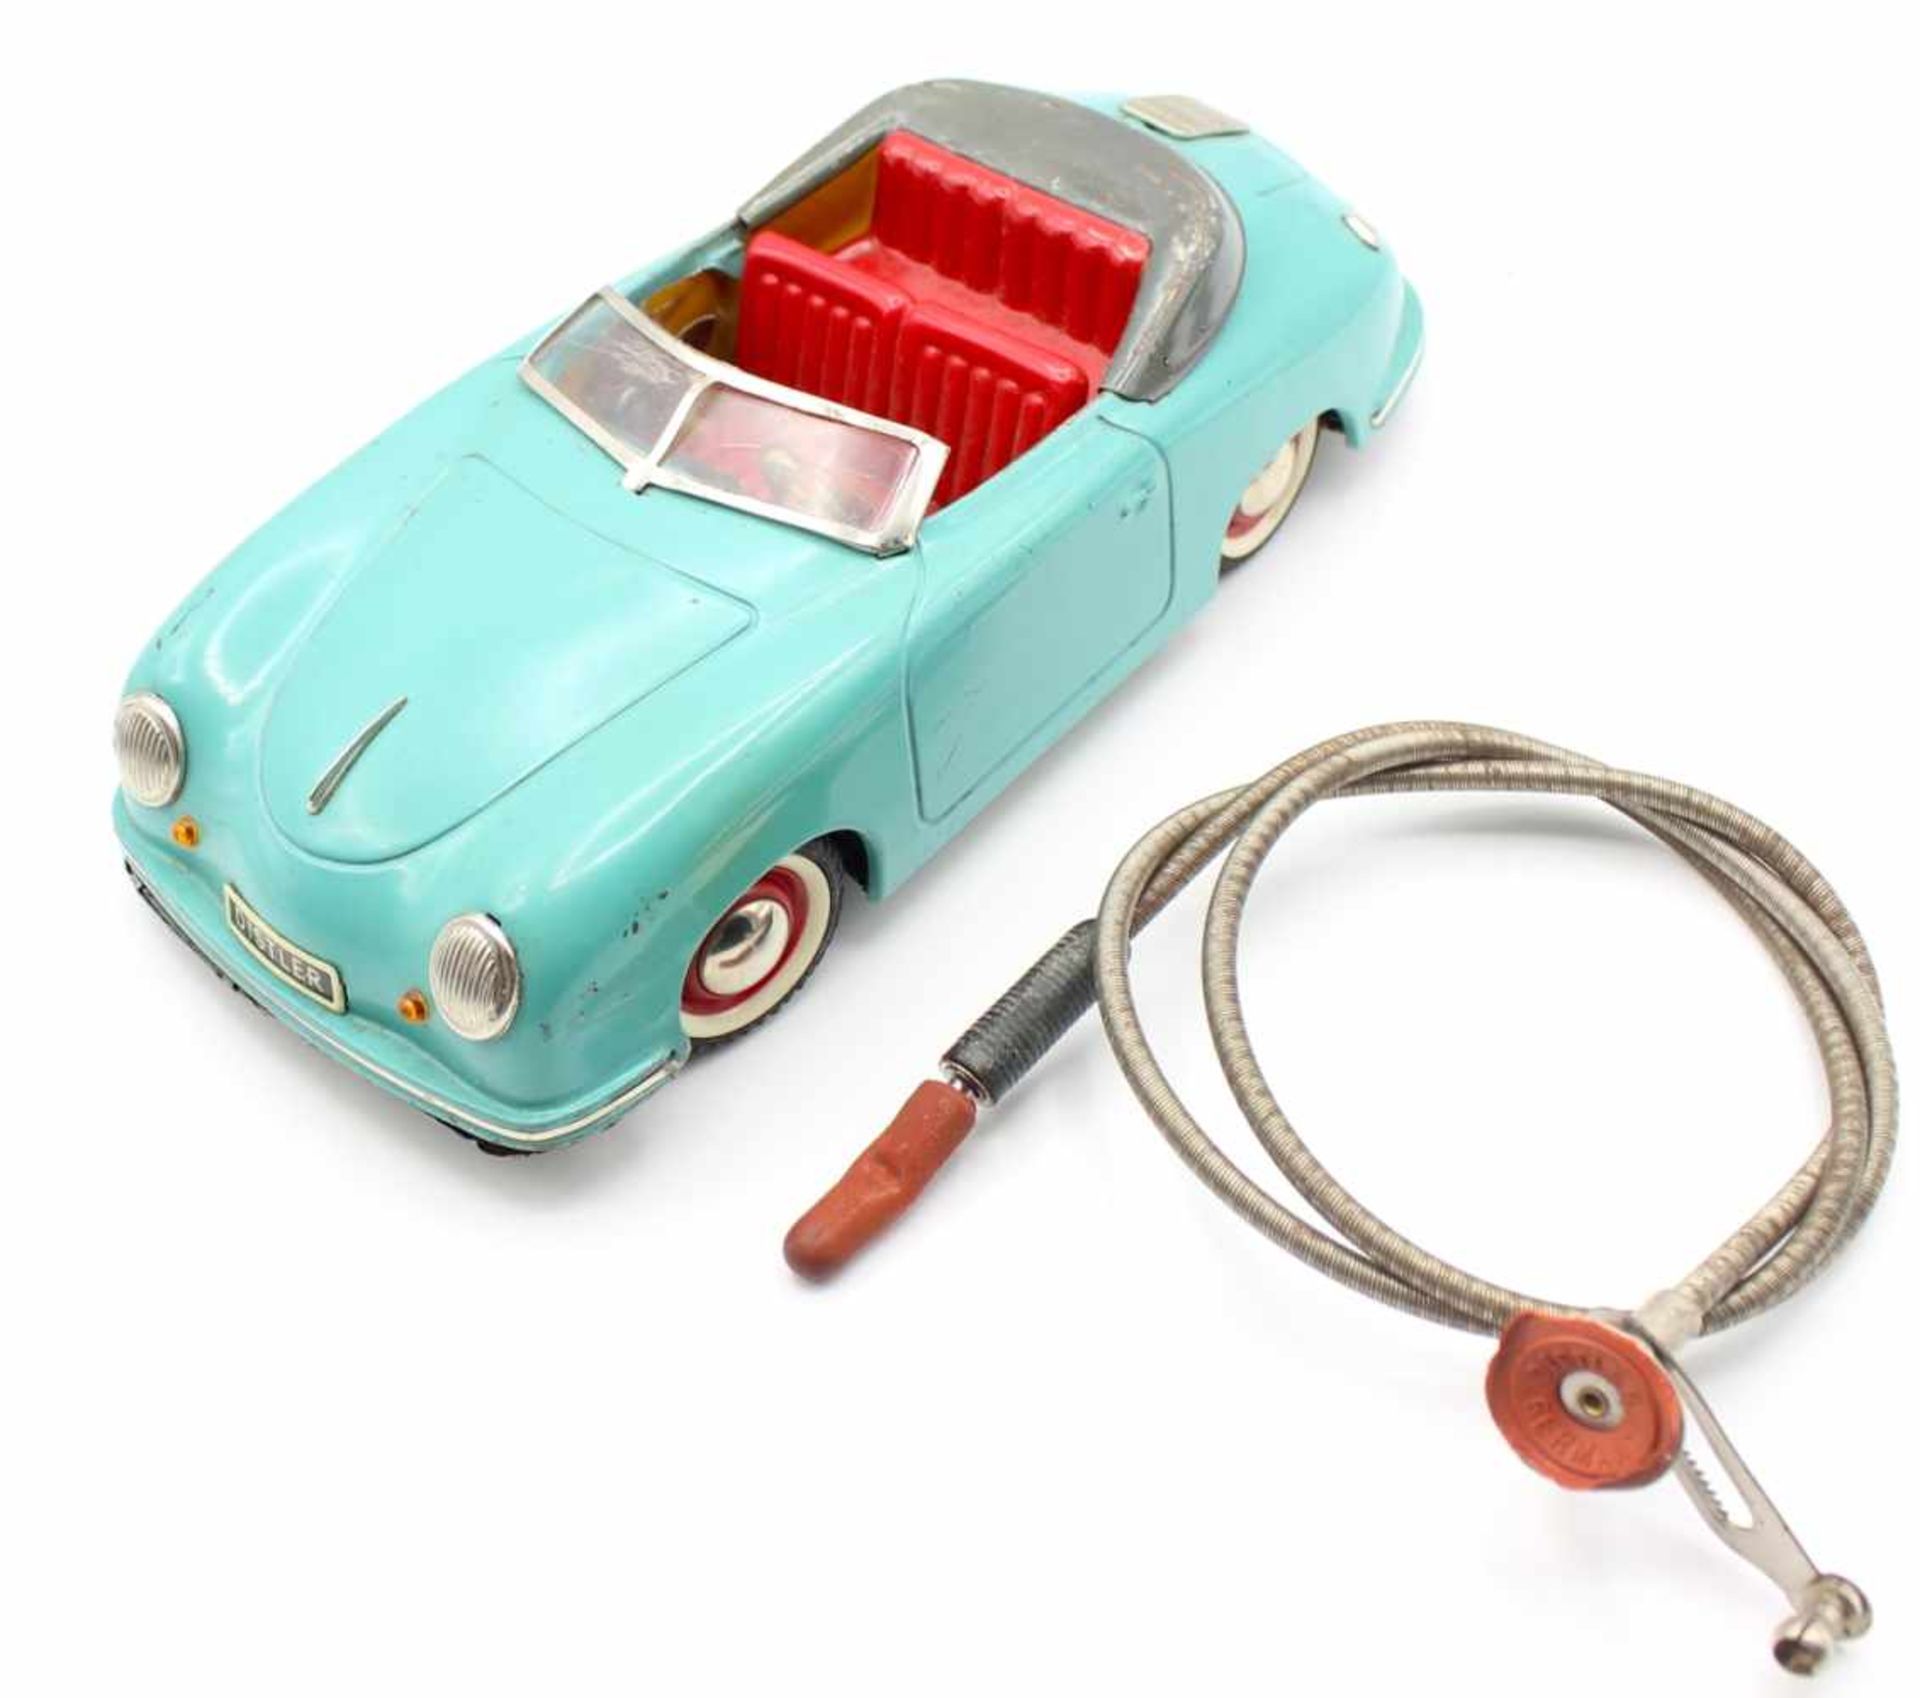 Altes Spielzeug Distler Porsche Electromatic 7500, Made in Western Germany, Startschlüssel mit